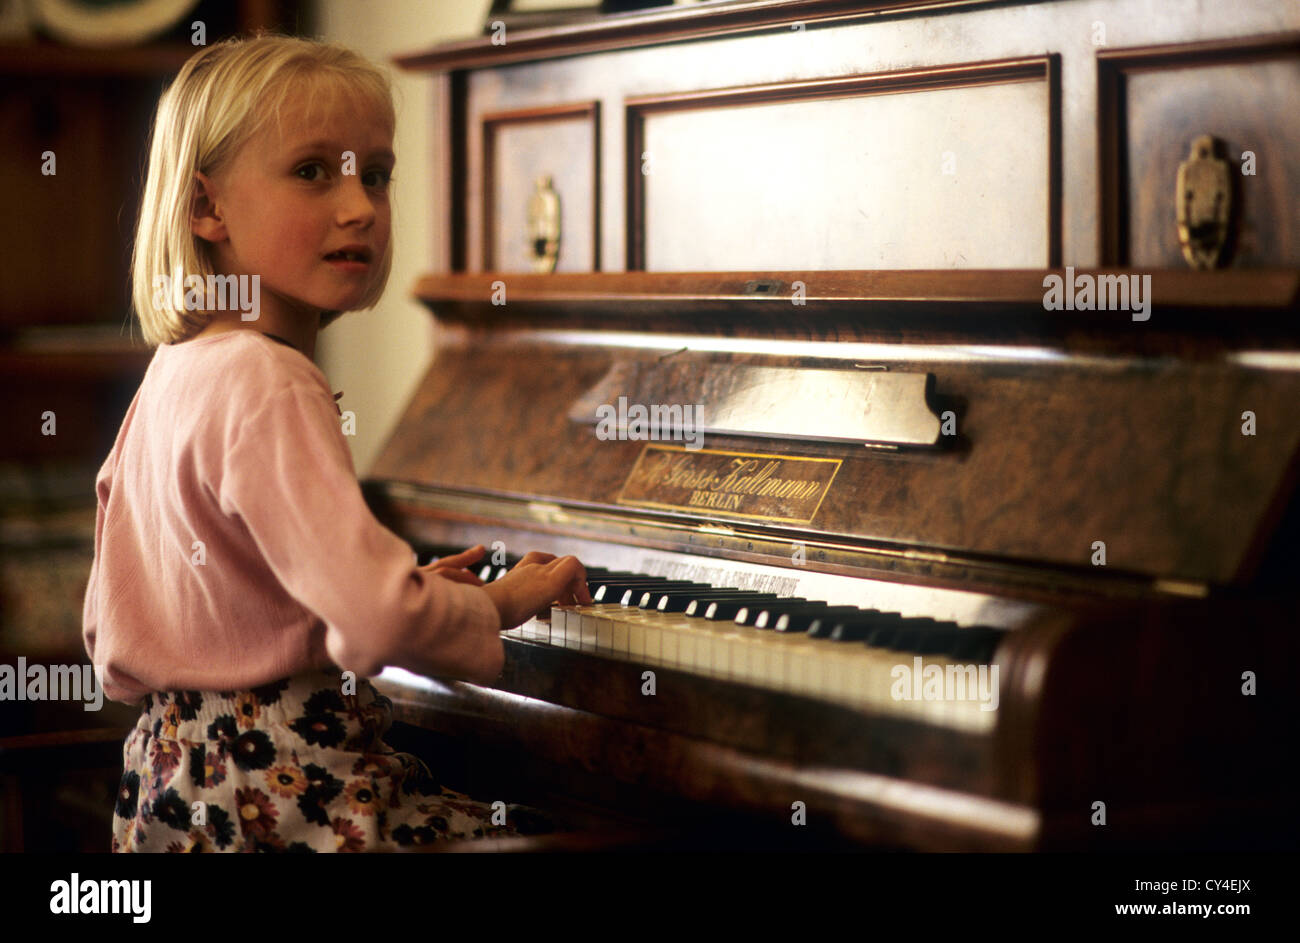 Les enfants de 6 ans à jouer du piano, fille blonde au piano Photo Stock -  Alamy